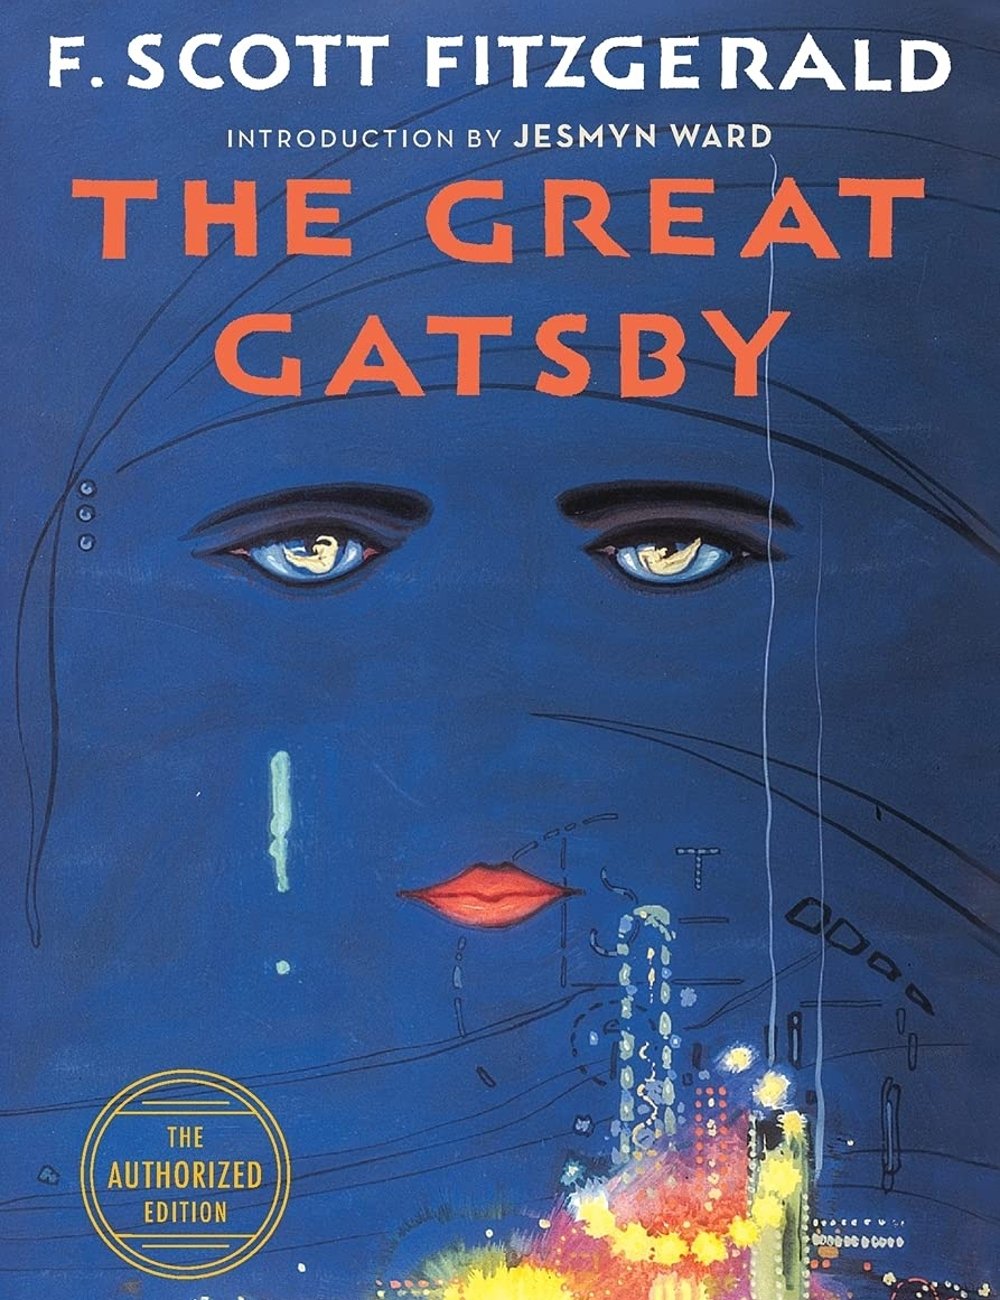 The Great Gatsby - livros que viraram filme - livros que viraram filme - livros que viraram filme - livros que viraram filme - https://stealthelook.com.br